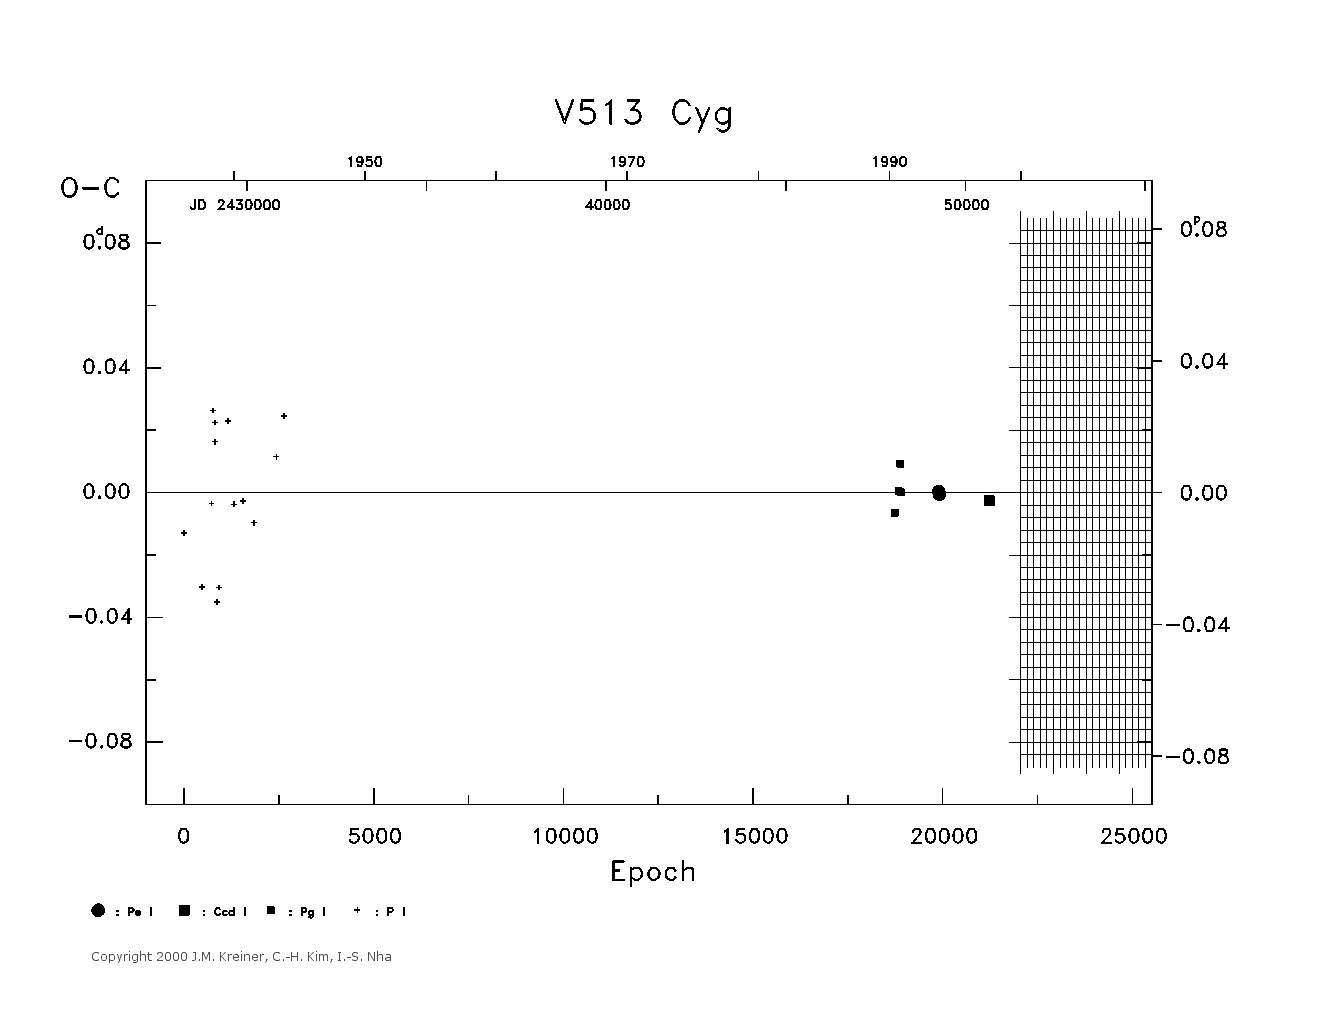 [IMAGE: large V513 CYG O-C diagram]